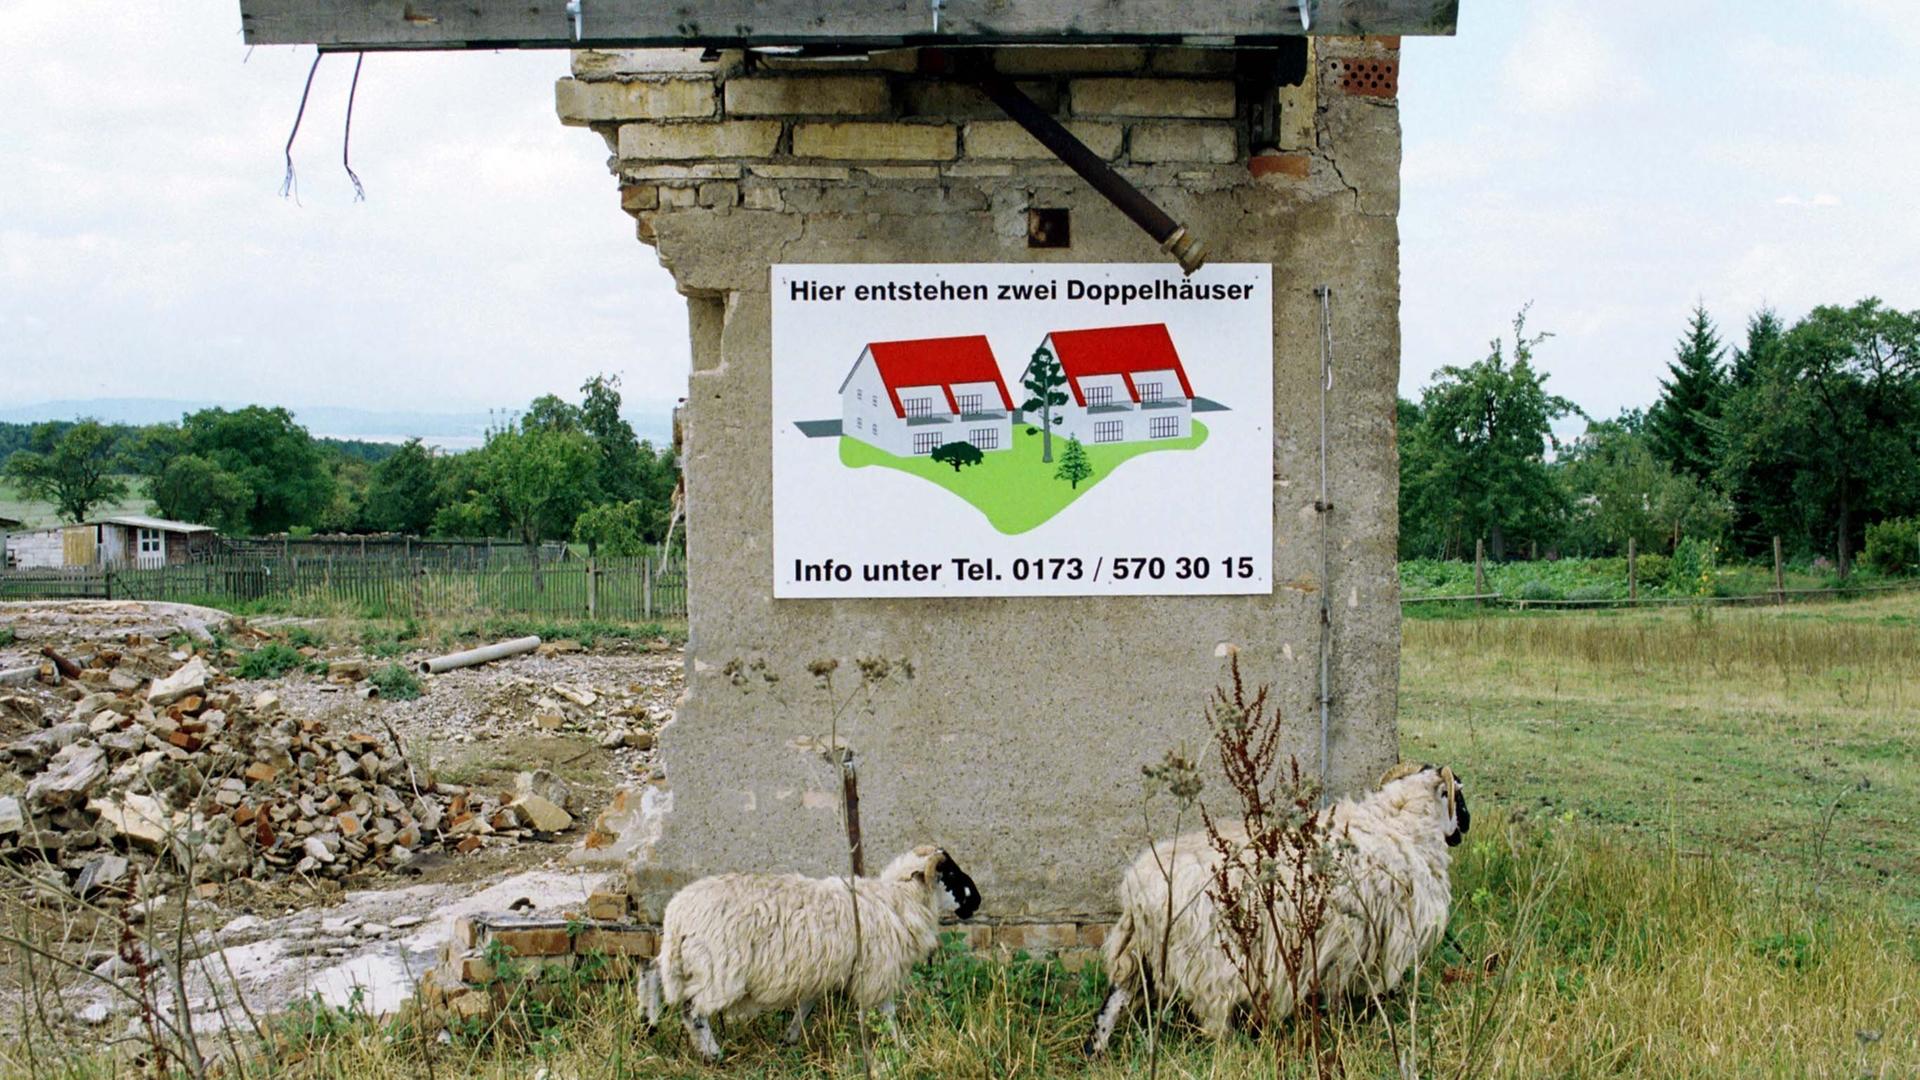 Zwei Schafe laufen vor einer Ruine im Dorf Riechheim/Thüringen. Das Werbeschild am Rest des Gebäudes verspricht den Bau von zwei Doppelhäusern im Jahr 2000.